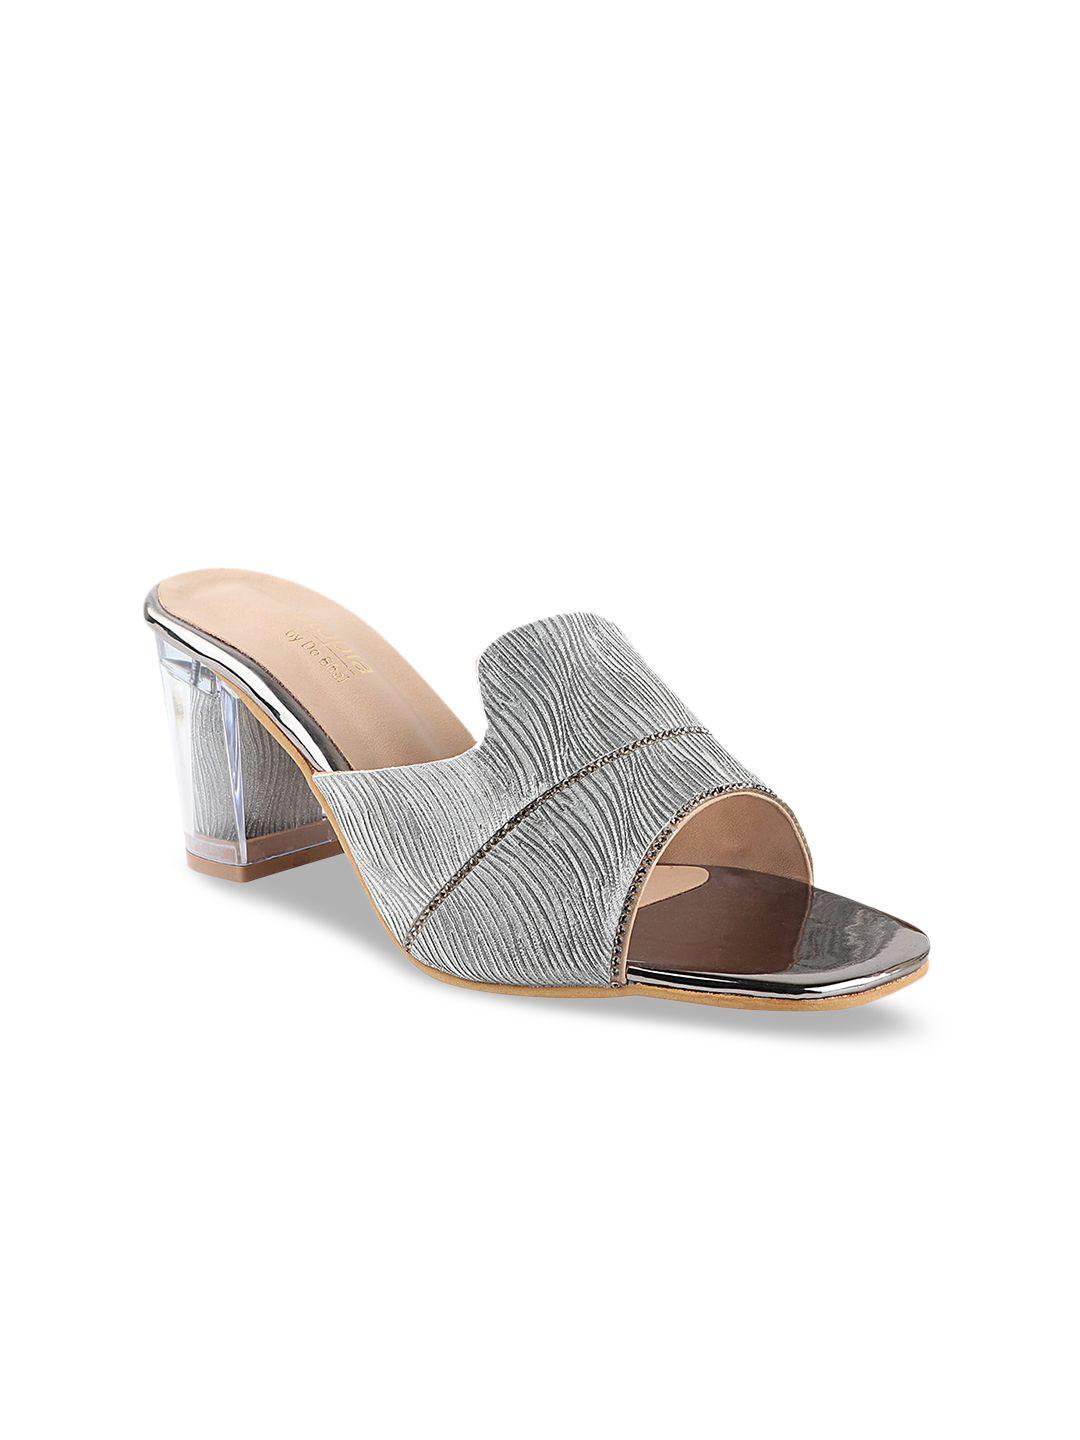 shoetopia girls grey textured heels